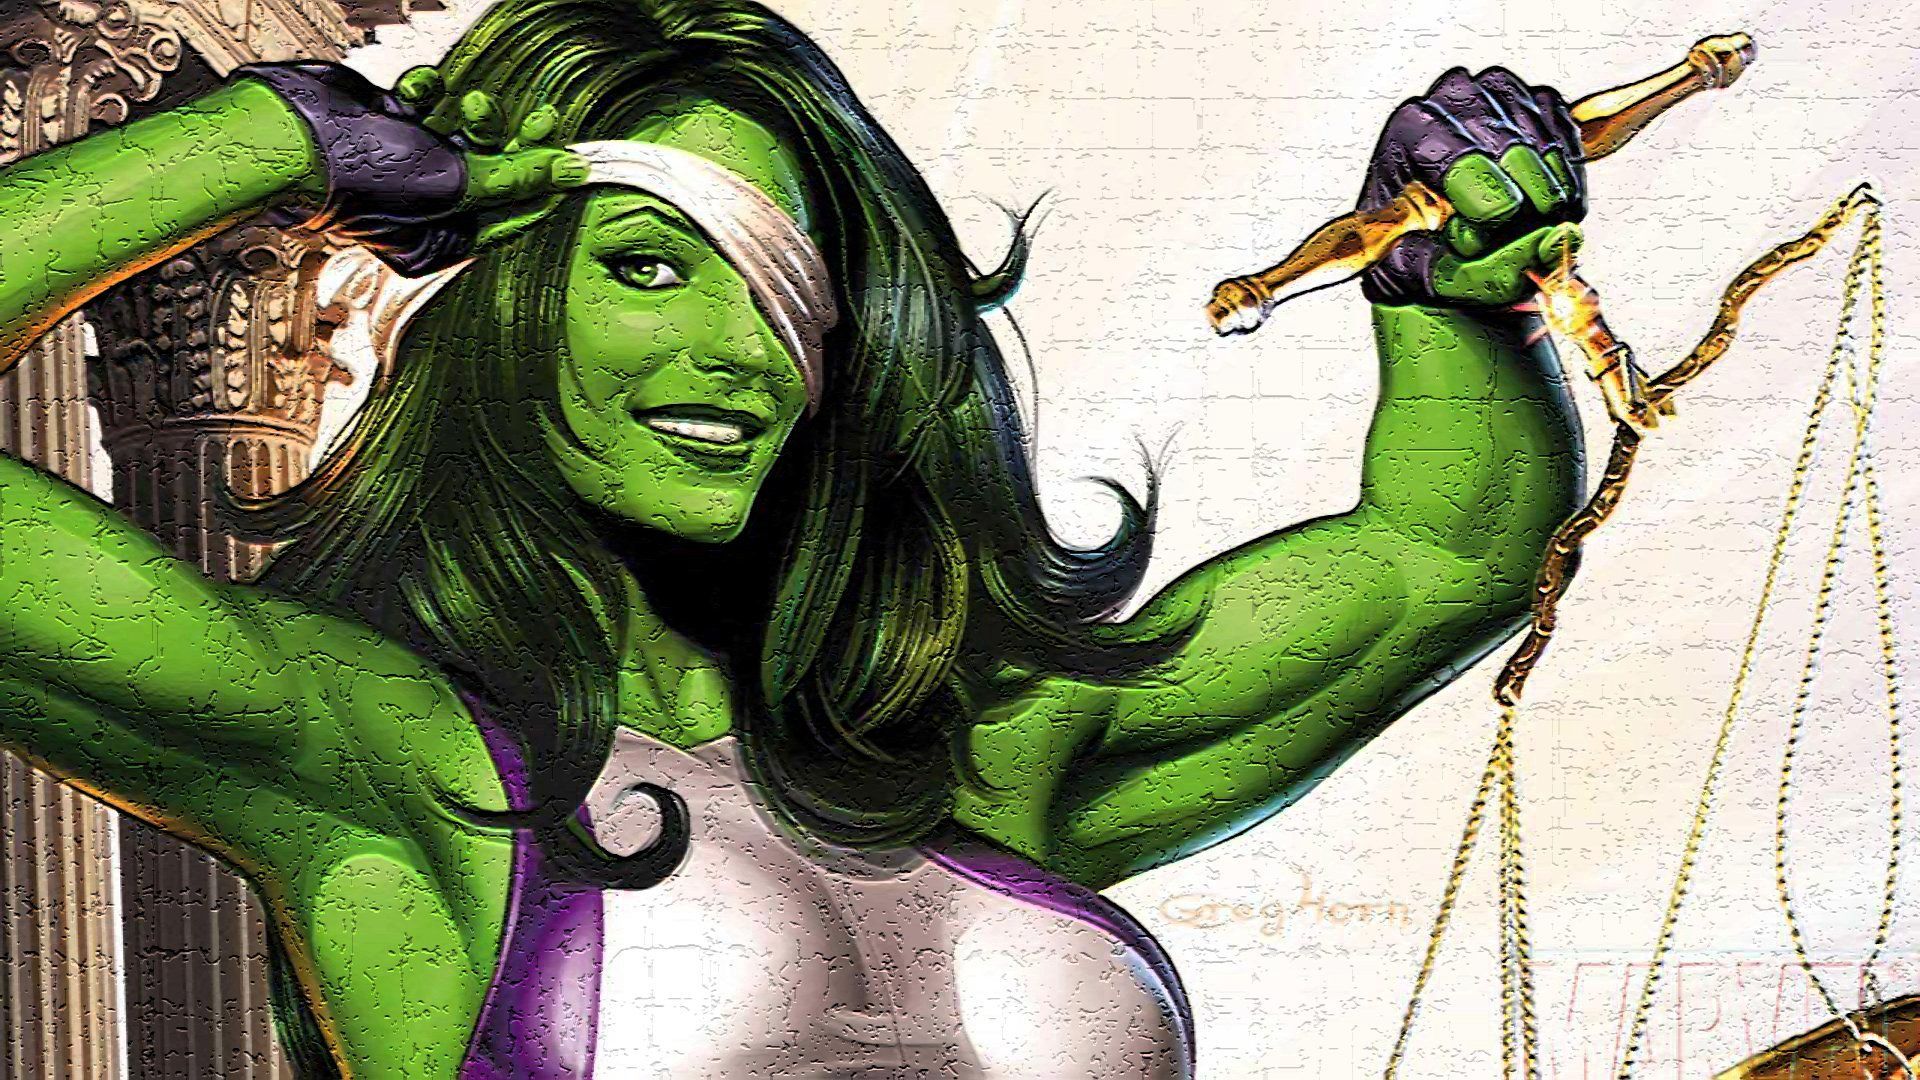 She Hulk Wallpaper. Shehulk, Female Marvel Superheroes, Marvel Comic Character